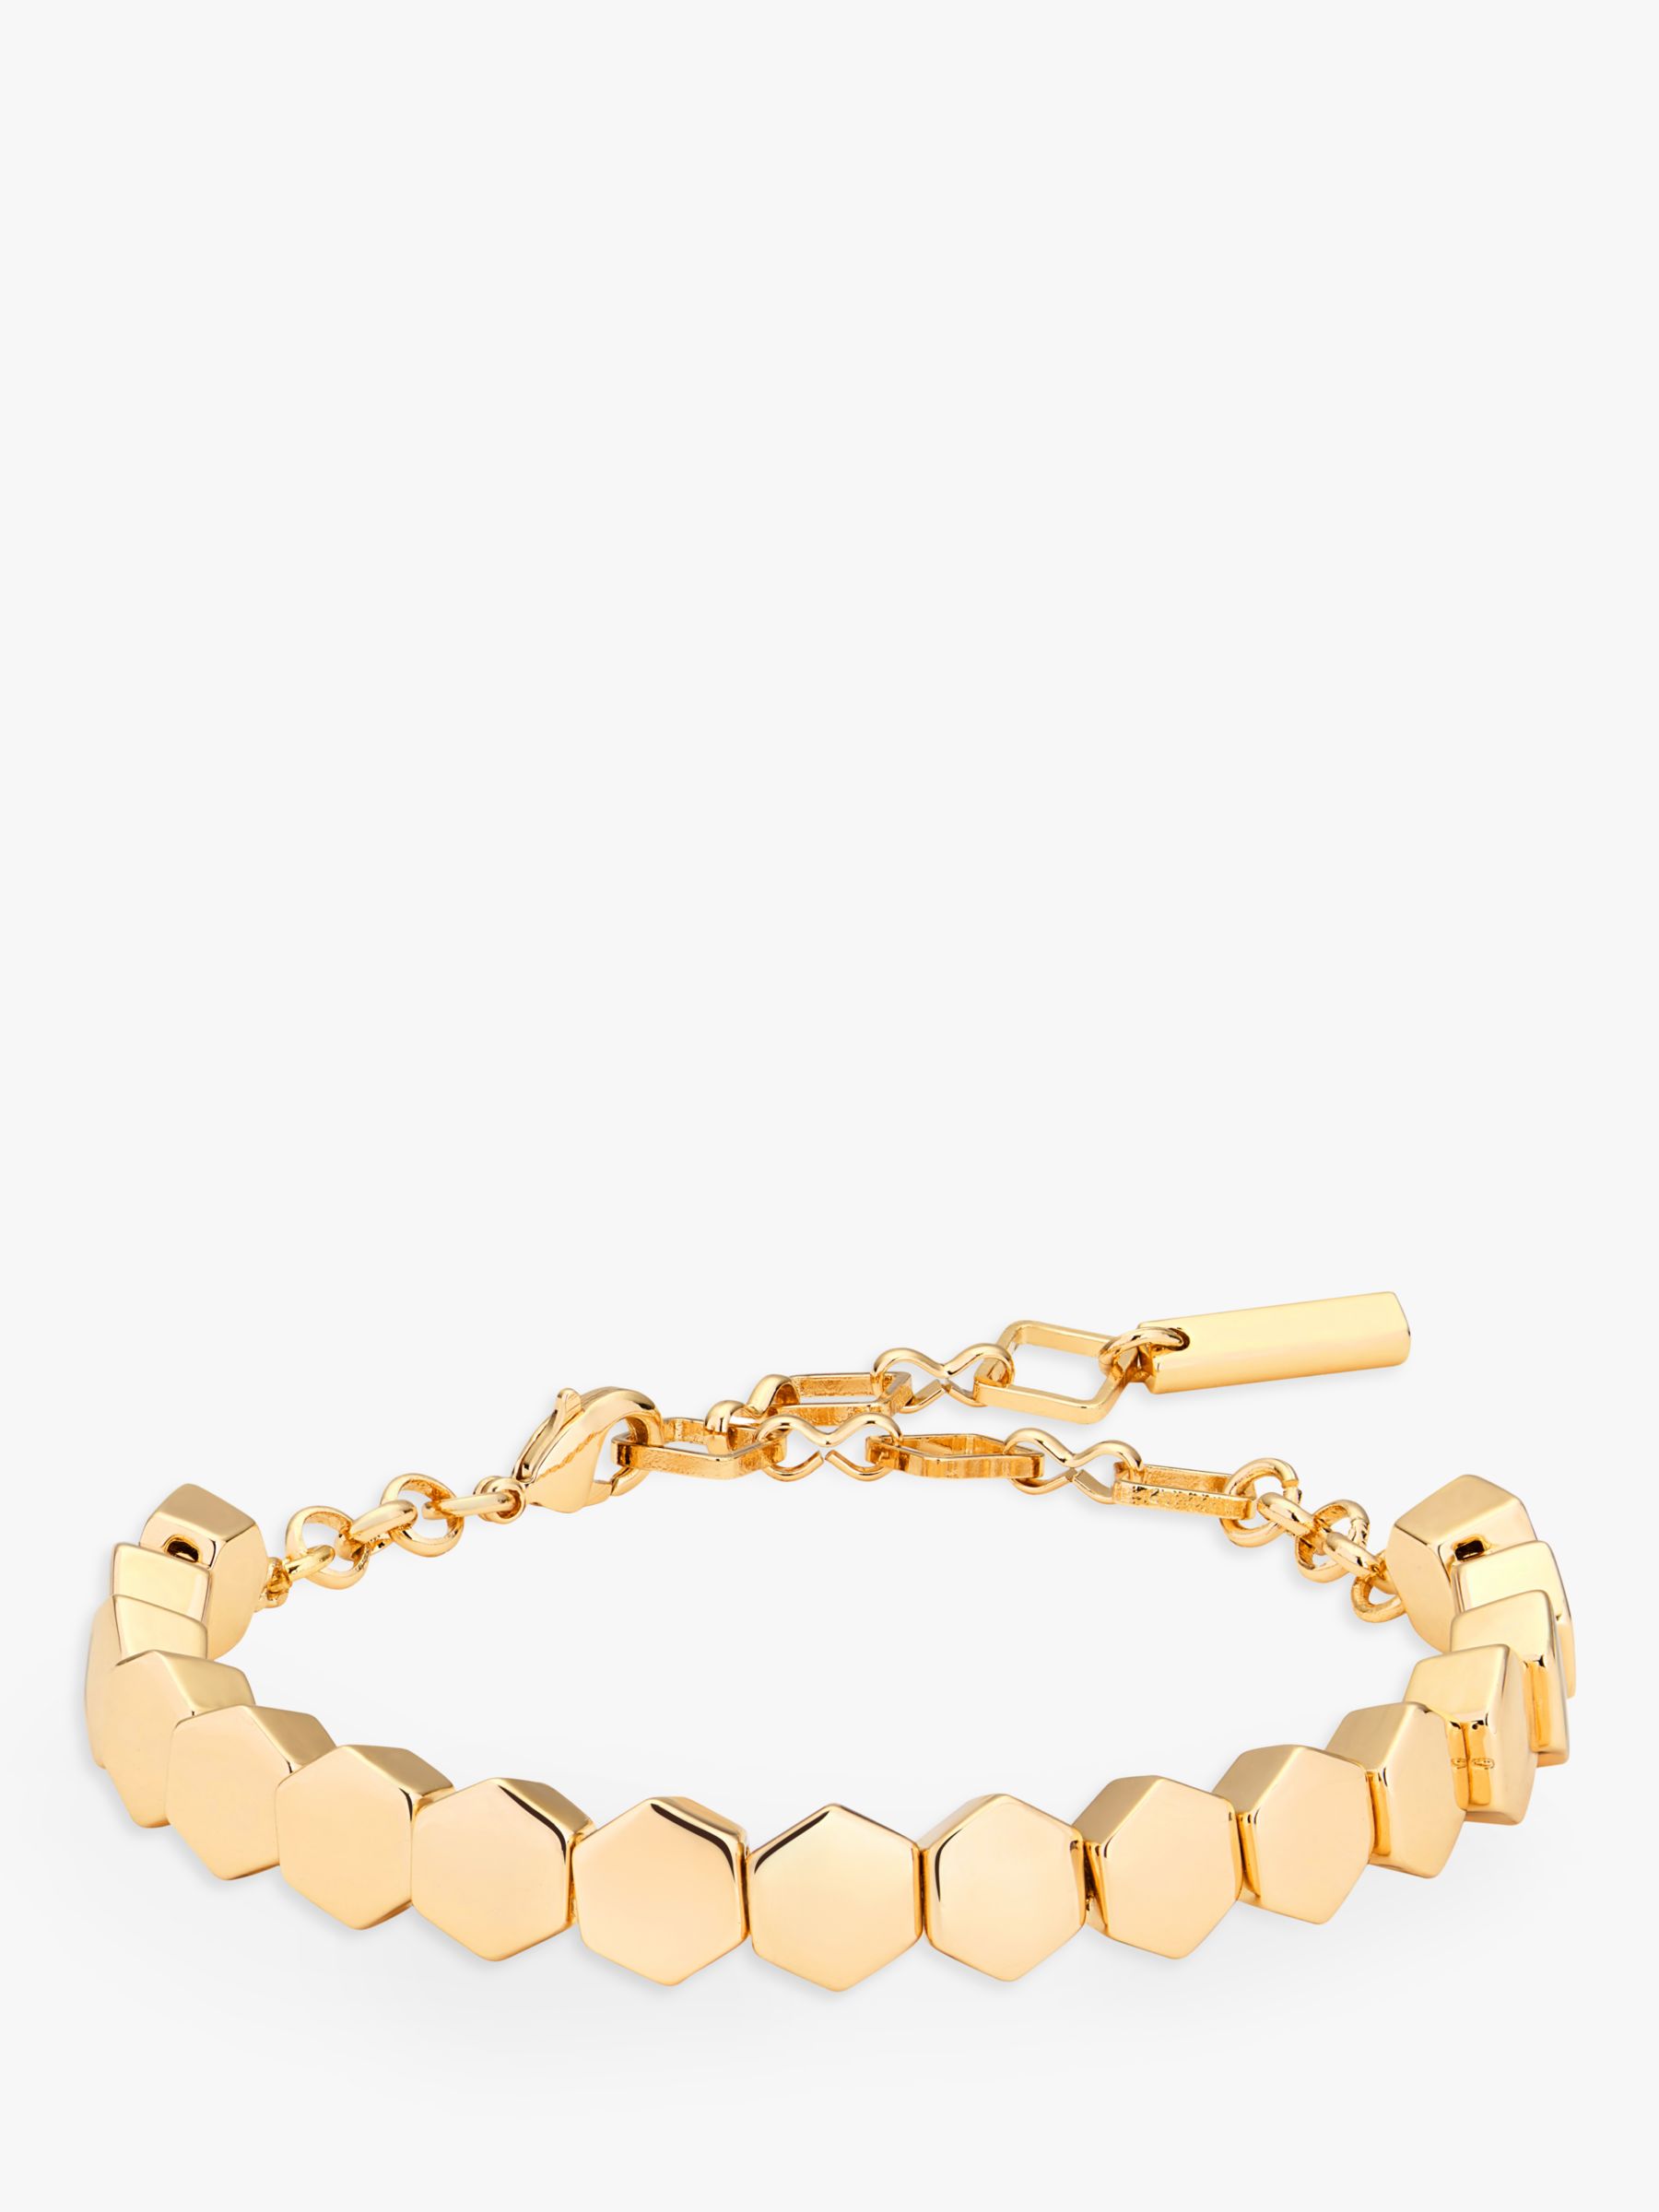 Karen Millen Hexagon Bracelet at John Lewis & Partners